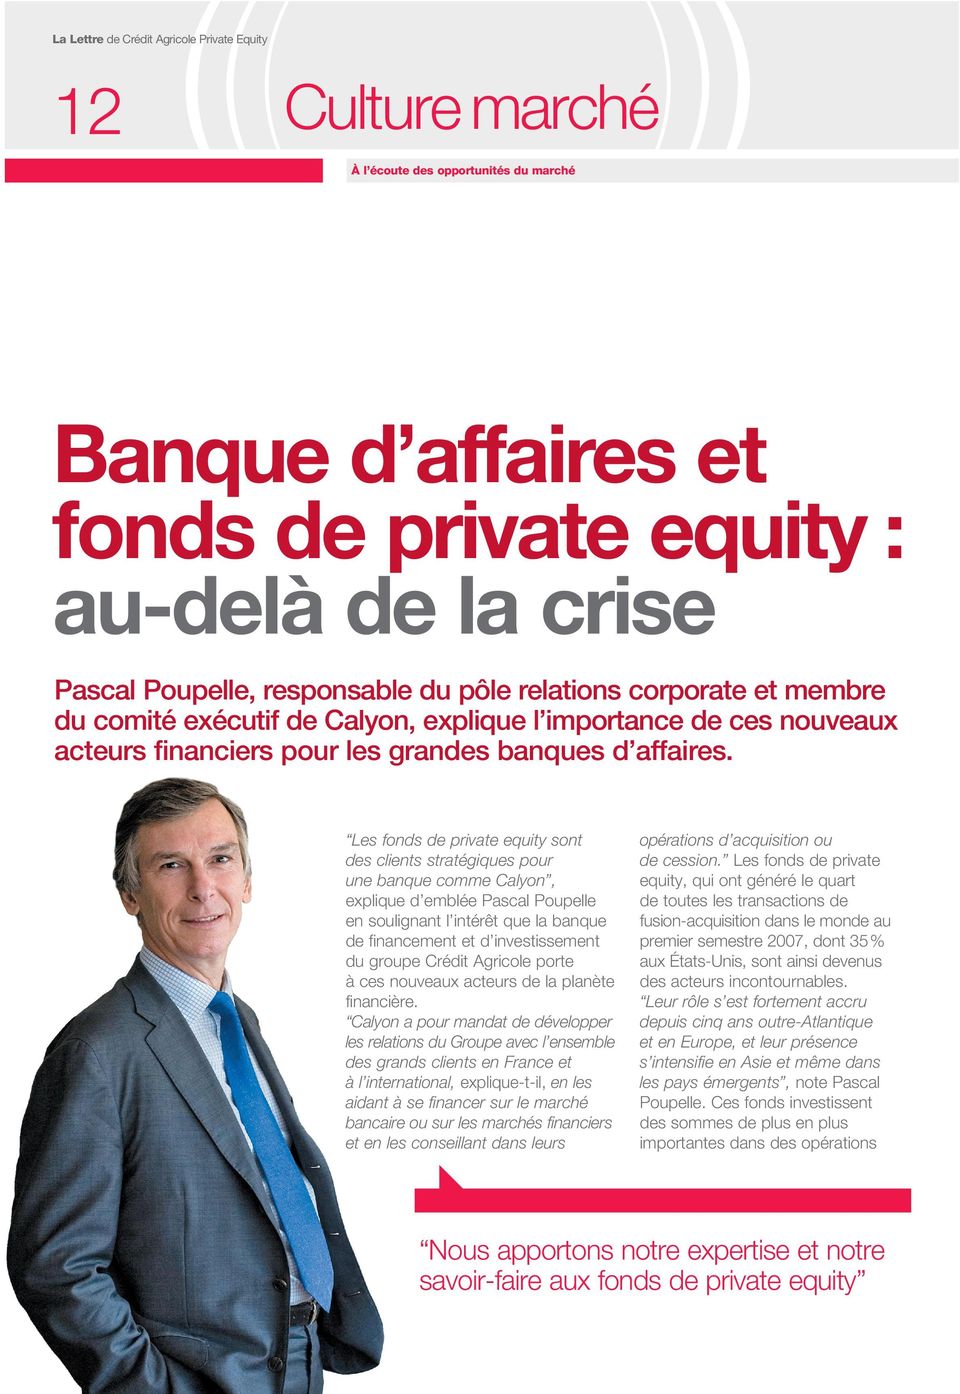 Les fonds de private equity sont des clients stratégiques pour une banque comme Calyon, explique d emblée Pascal Poupelle en soulignant l intérêt que la banque de financement et d investissement du